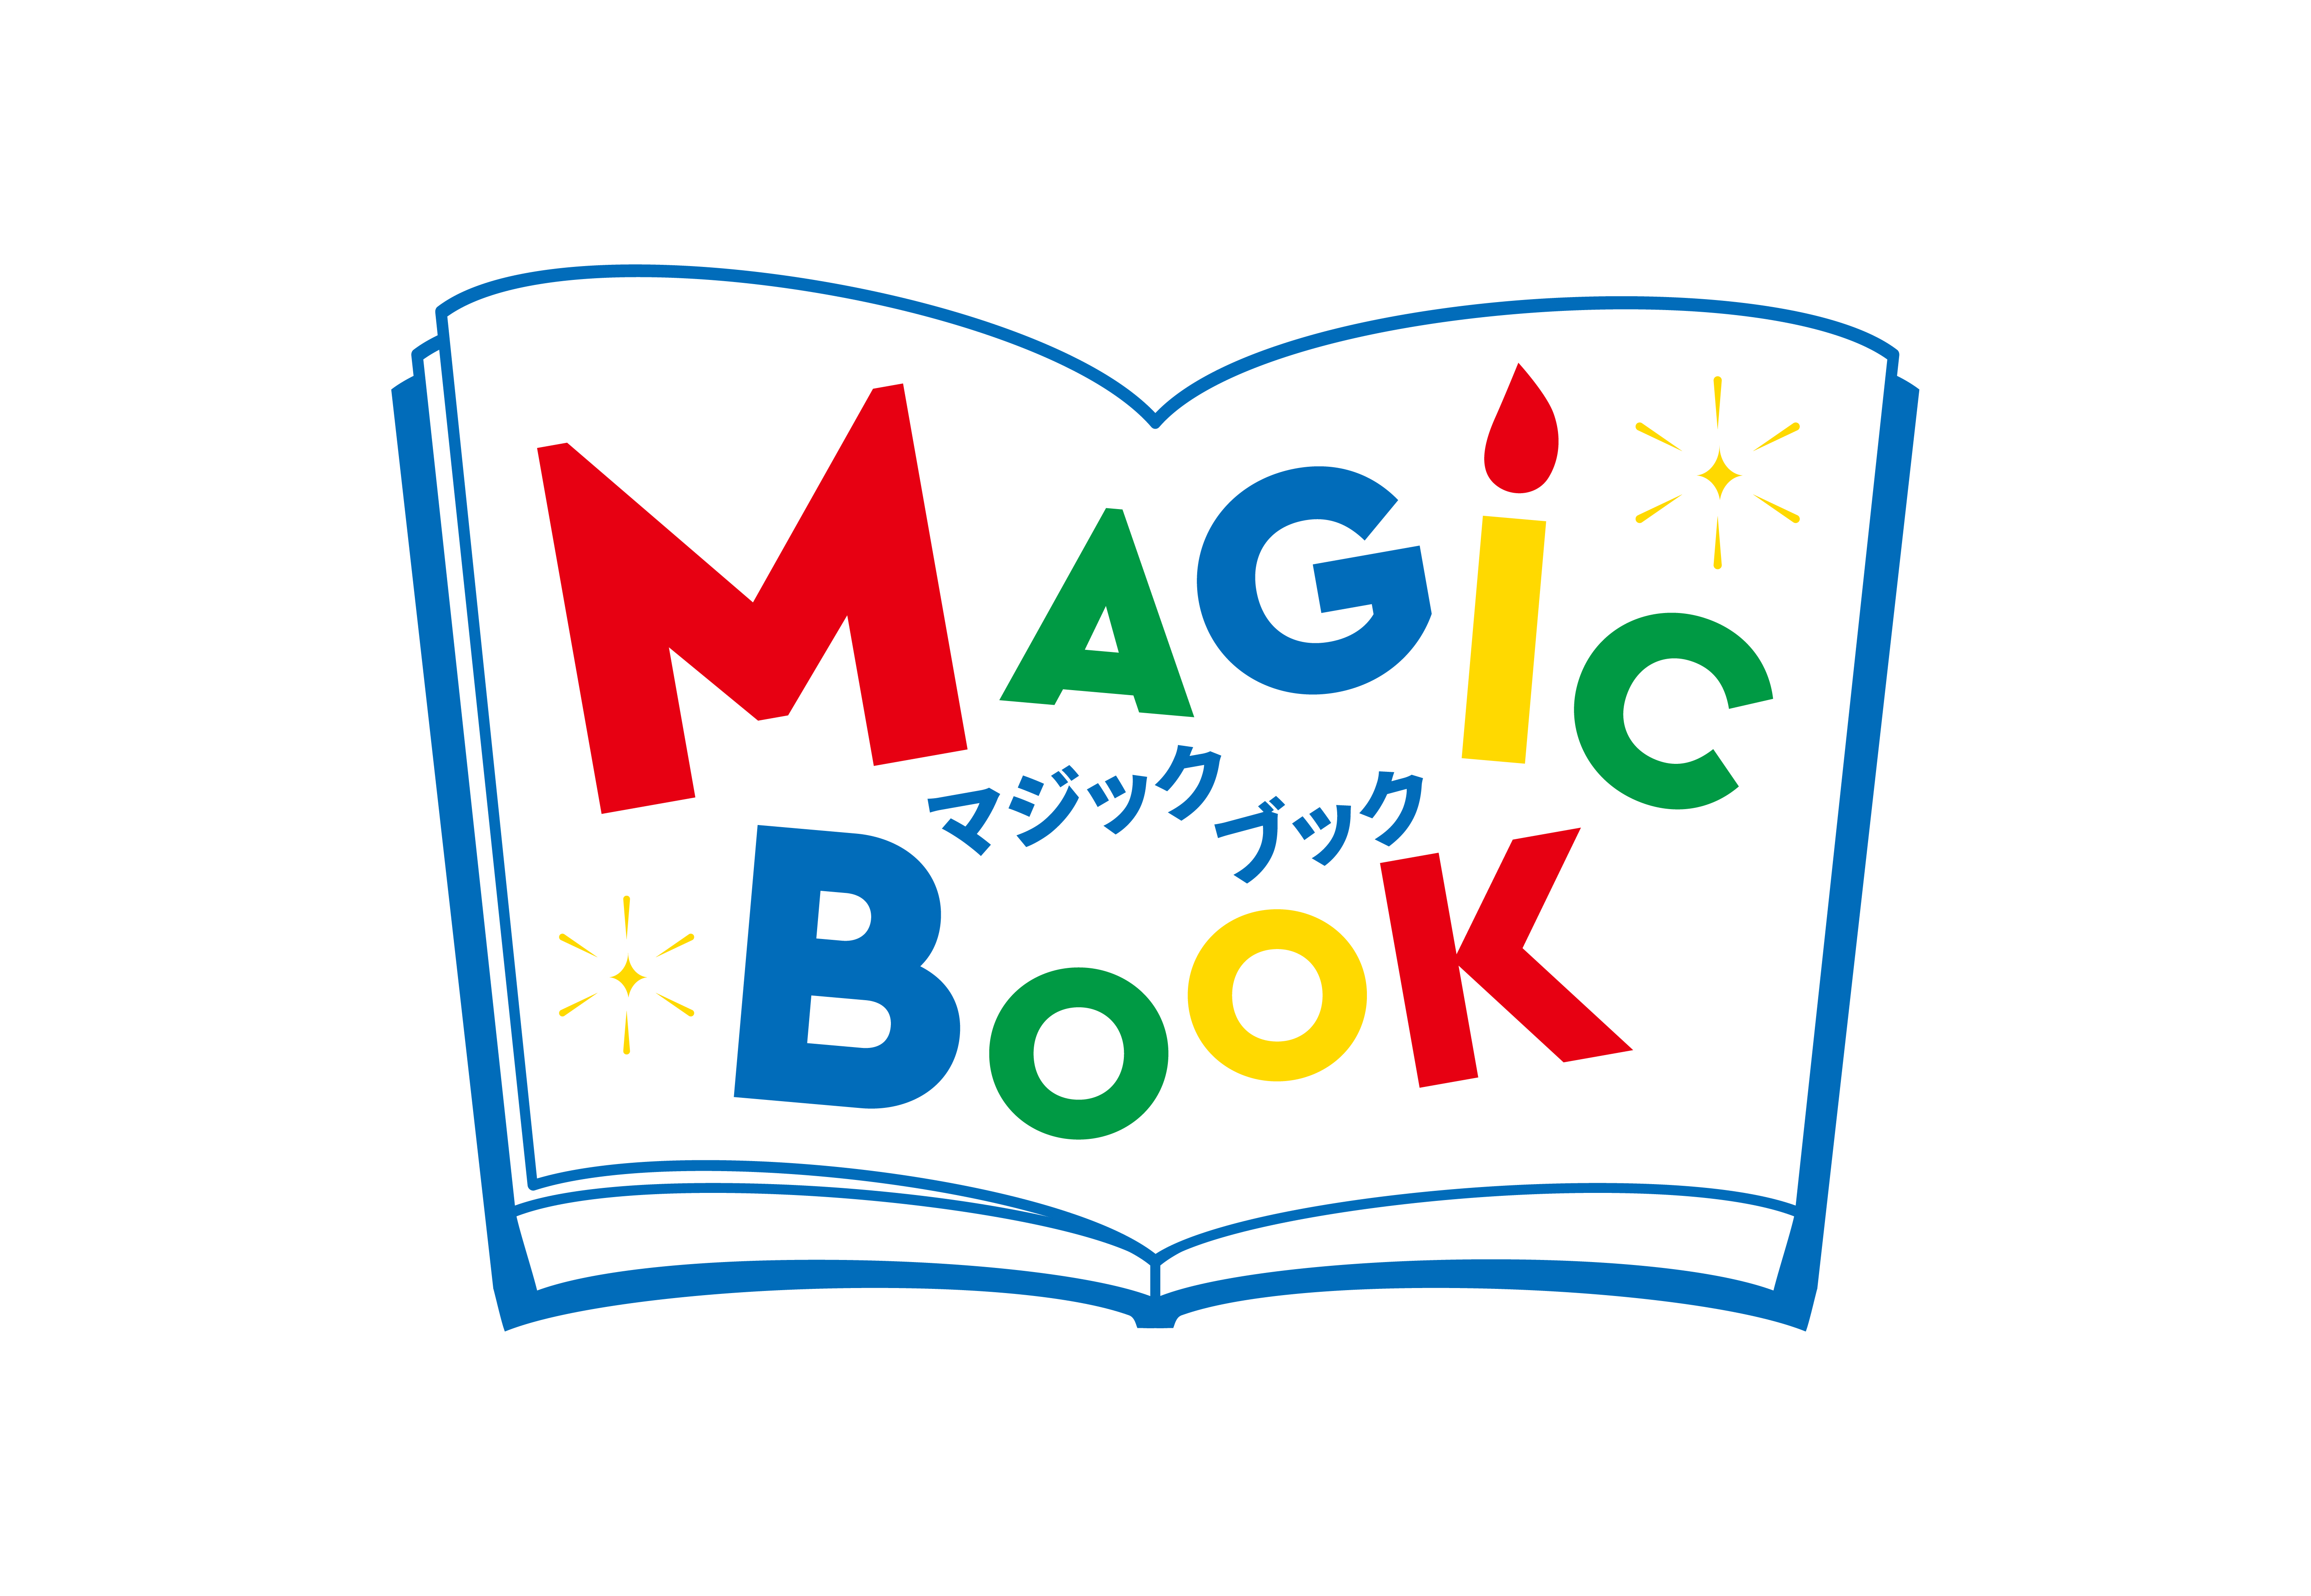 Magicbook